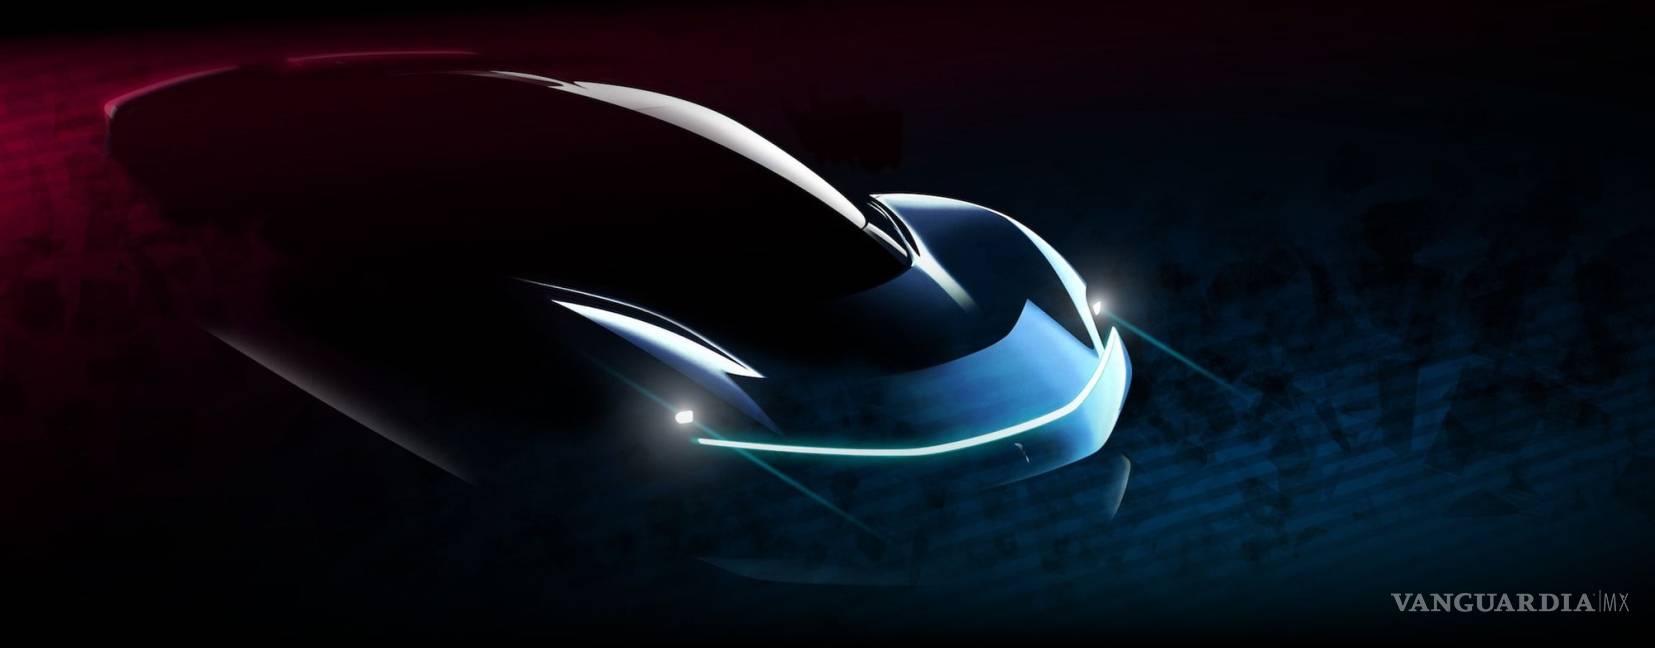 $!Pininfarina prepara un súper auto eléctrico de 1,926 hp y 350 km/h: Battista